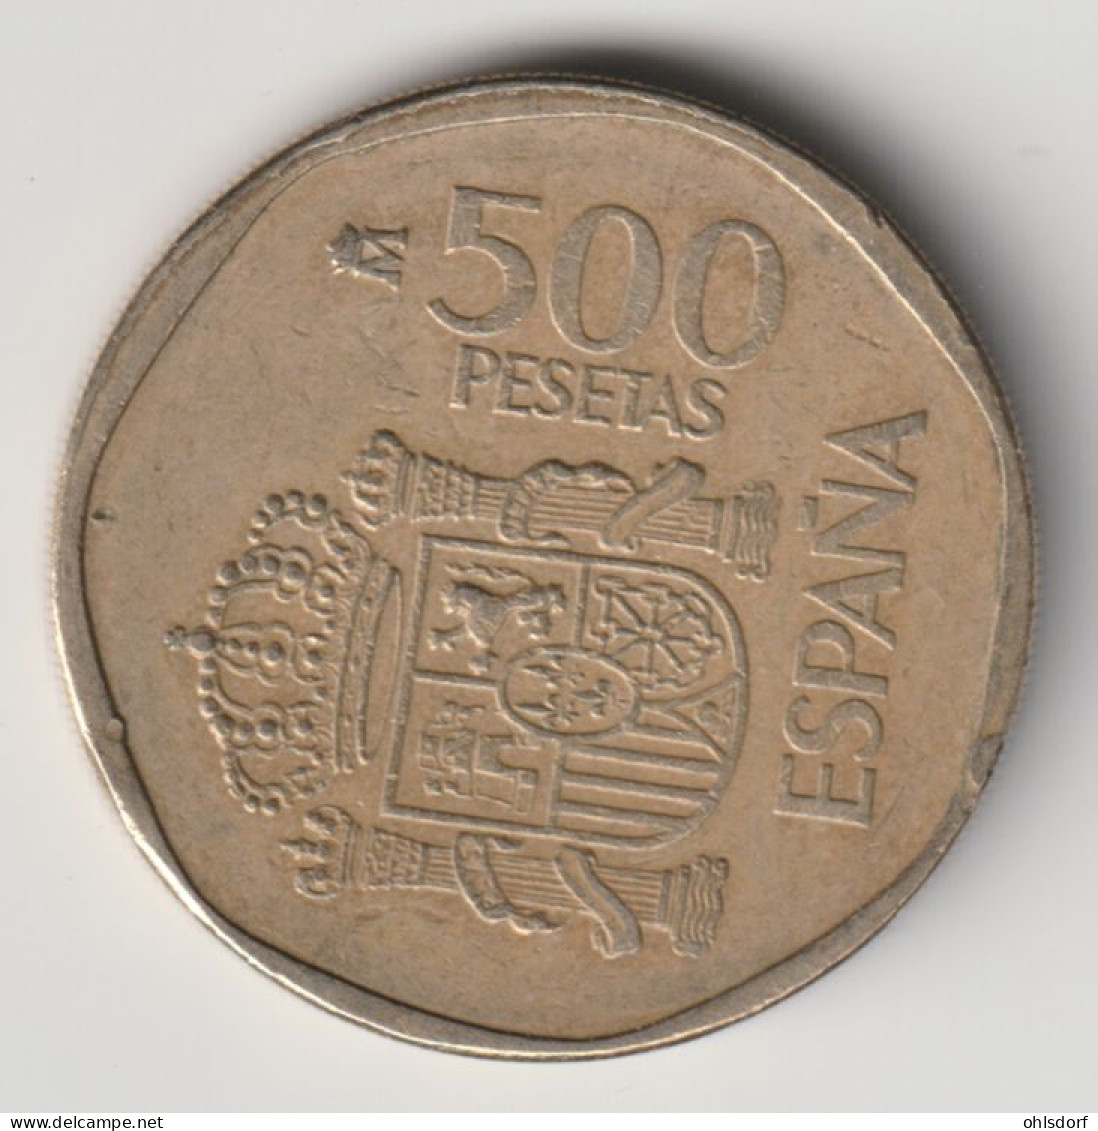 ESPANA 1988: 500 Pesetas, KM 831 - 500 Peseta